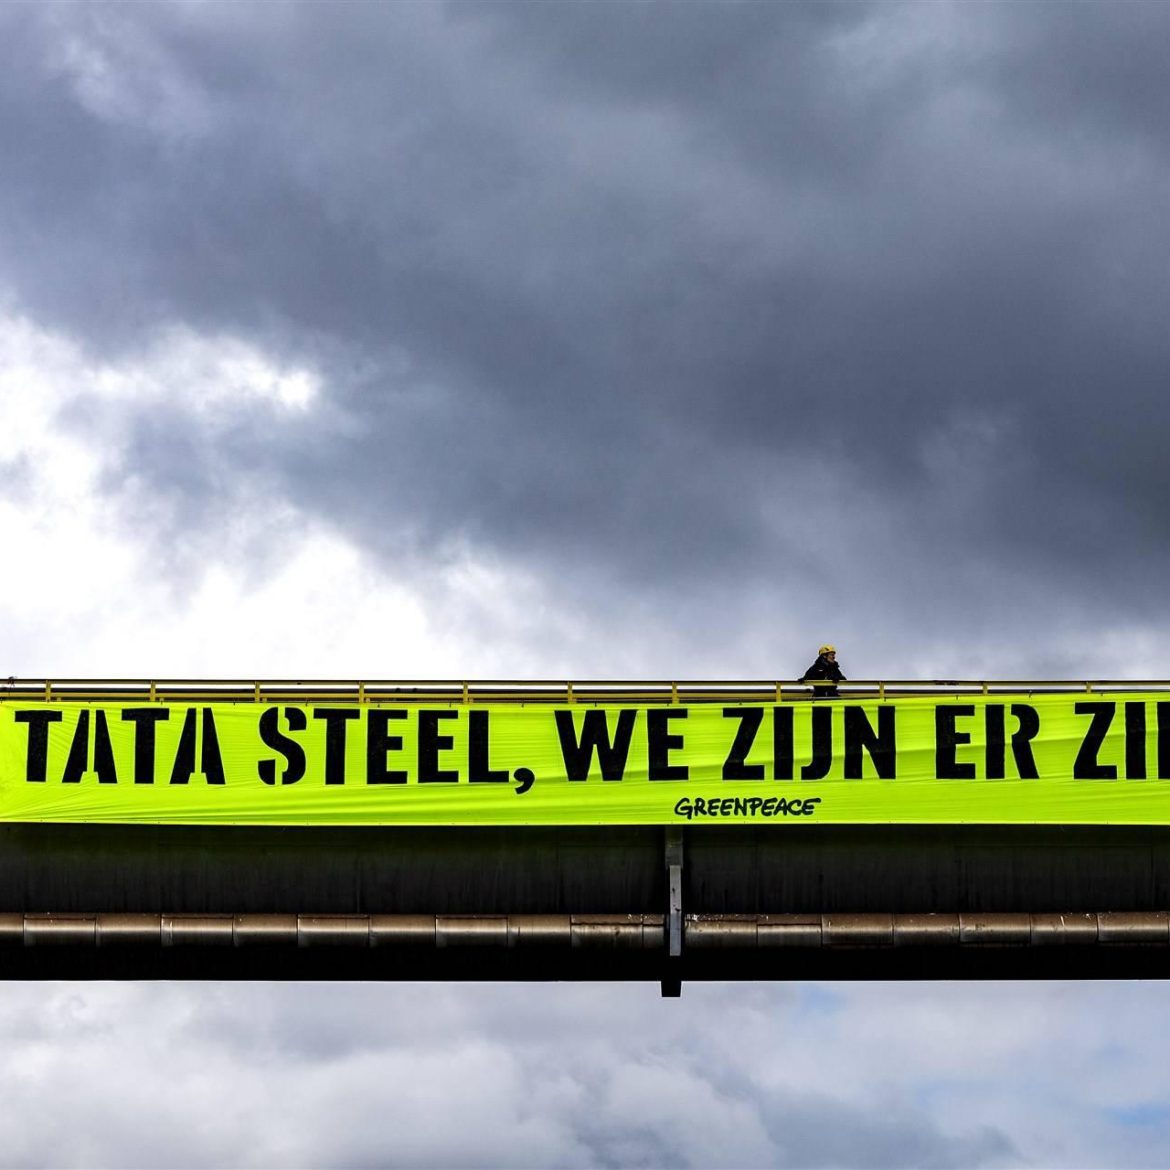 Omwonenden Tata Steel in actie voor schone lucht: 'We zijn er ziek van'